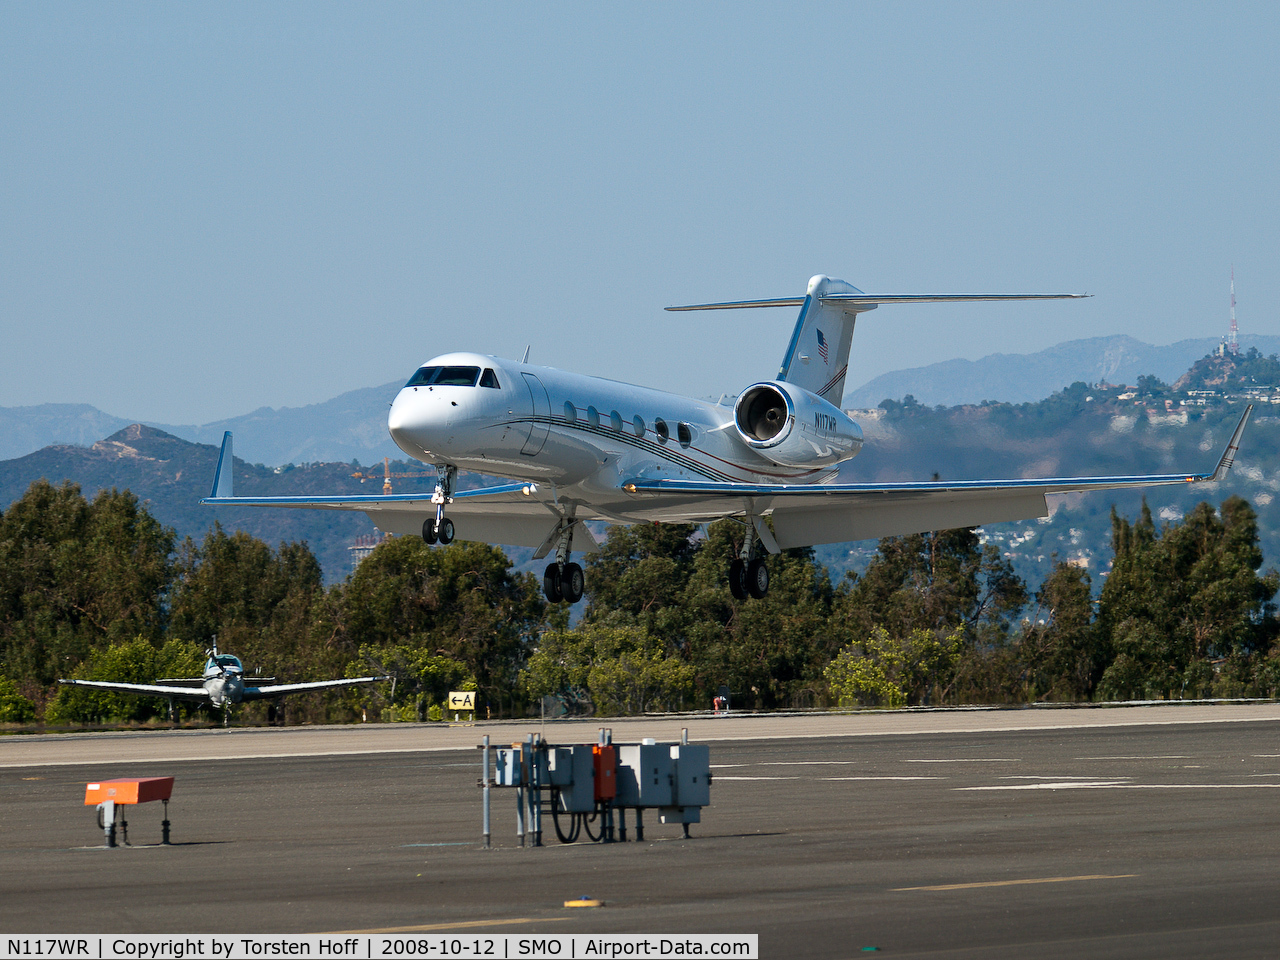 N117WR, 2005 Gulfstream Aerospace GIV-X (G350) C/N 4015, N117WR arriving on RWY 21